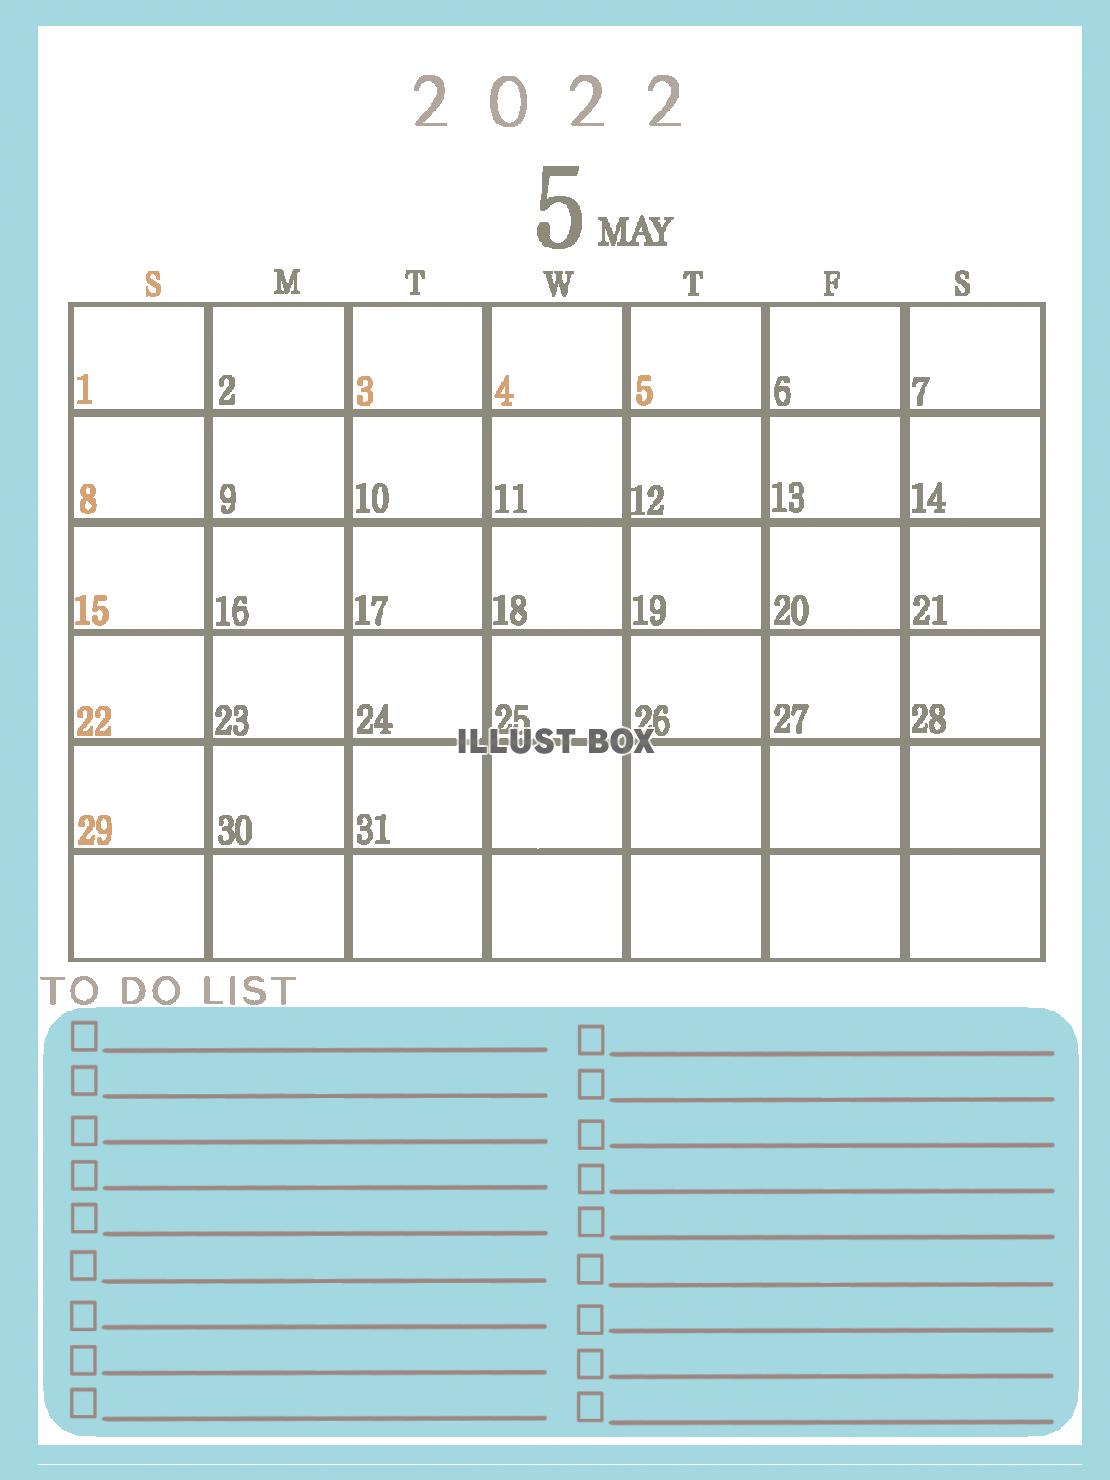 ２０２２年　TODOリストのあるシンプルなカレンダー（５月）